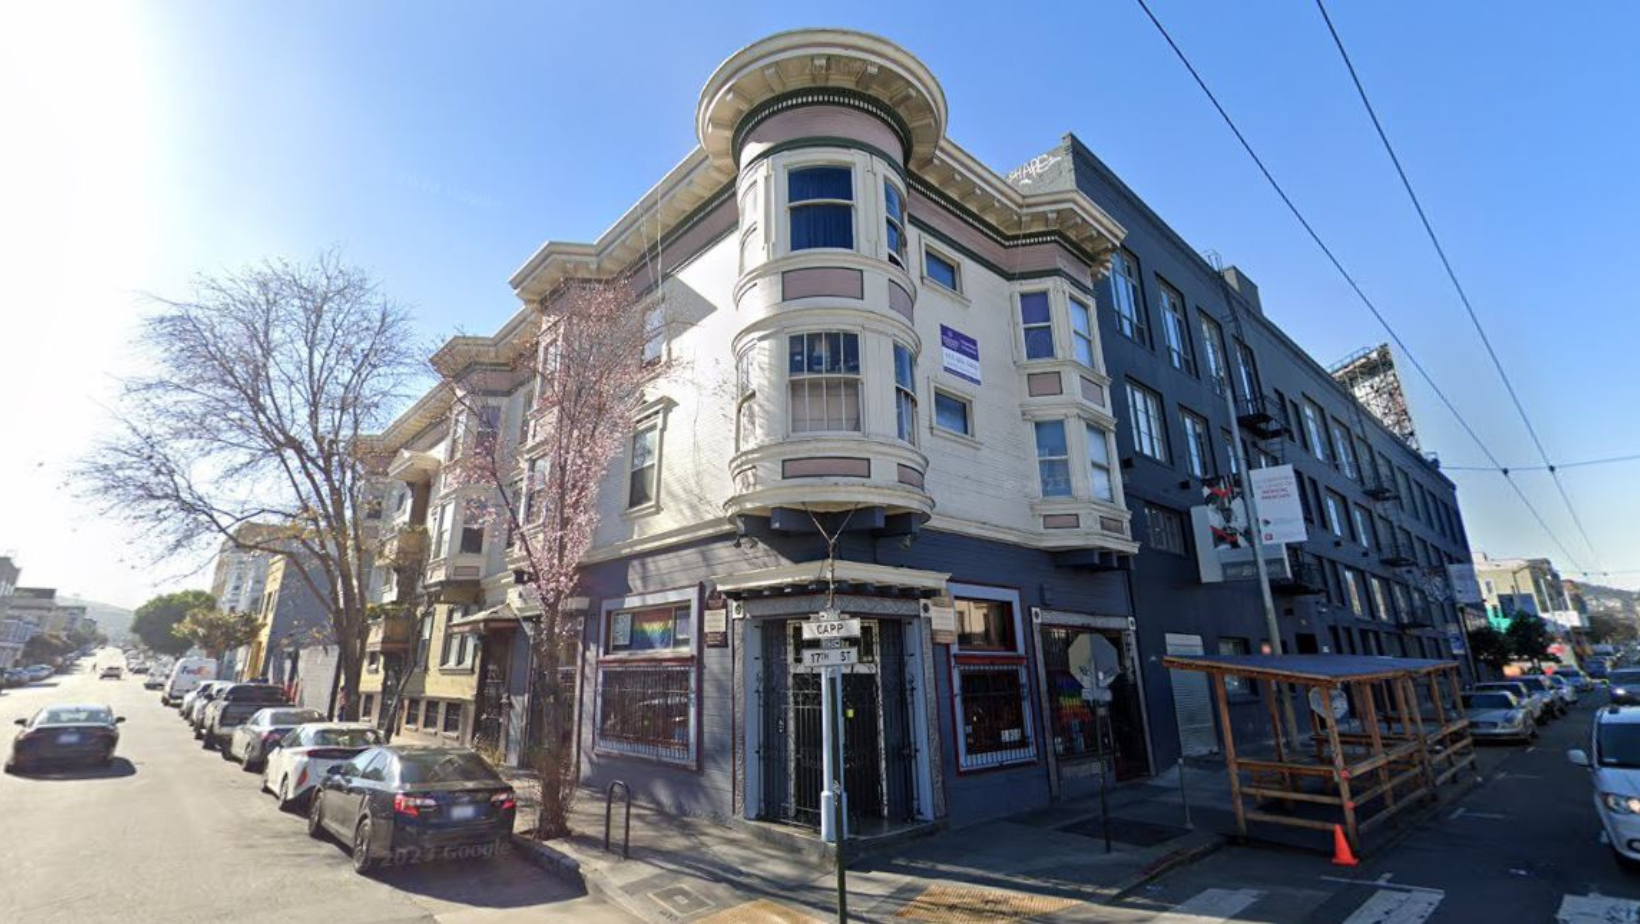 旧金山热门的潜水酒吧“Uptown”将在39年后关闭